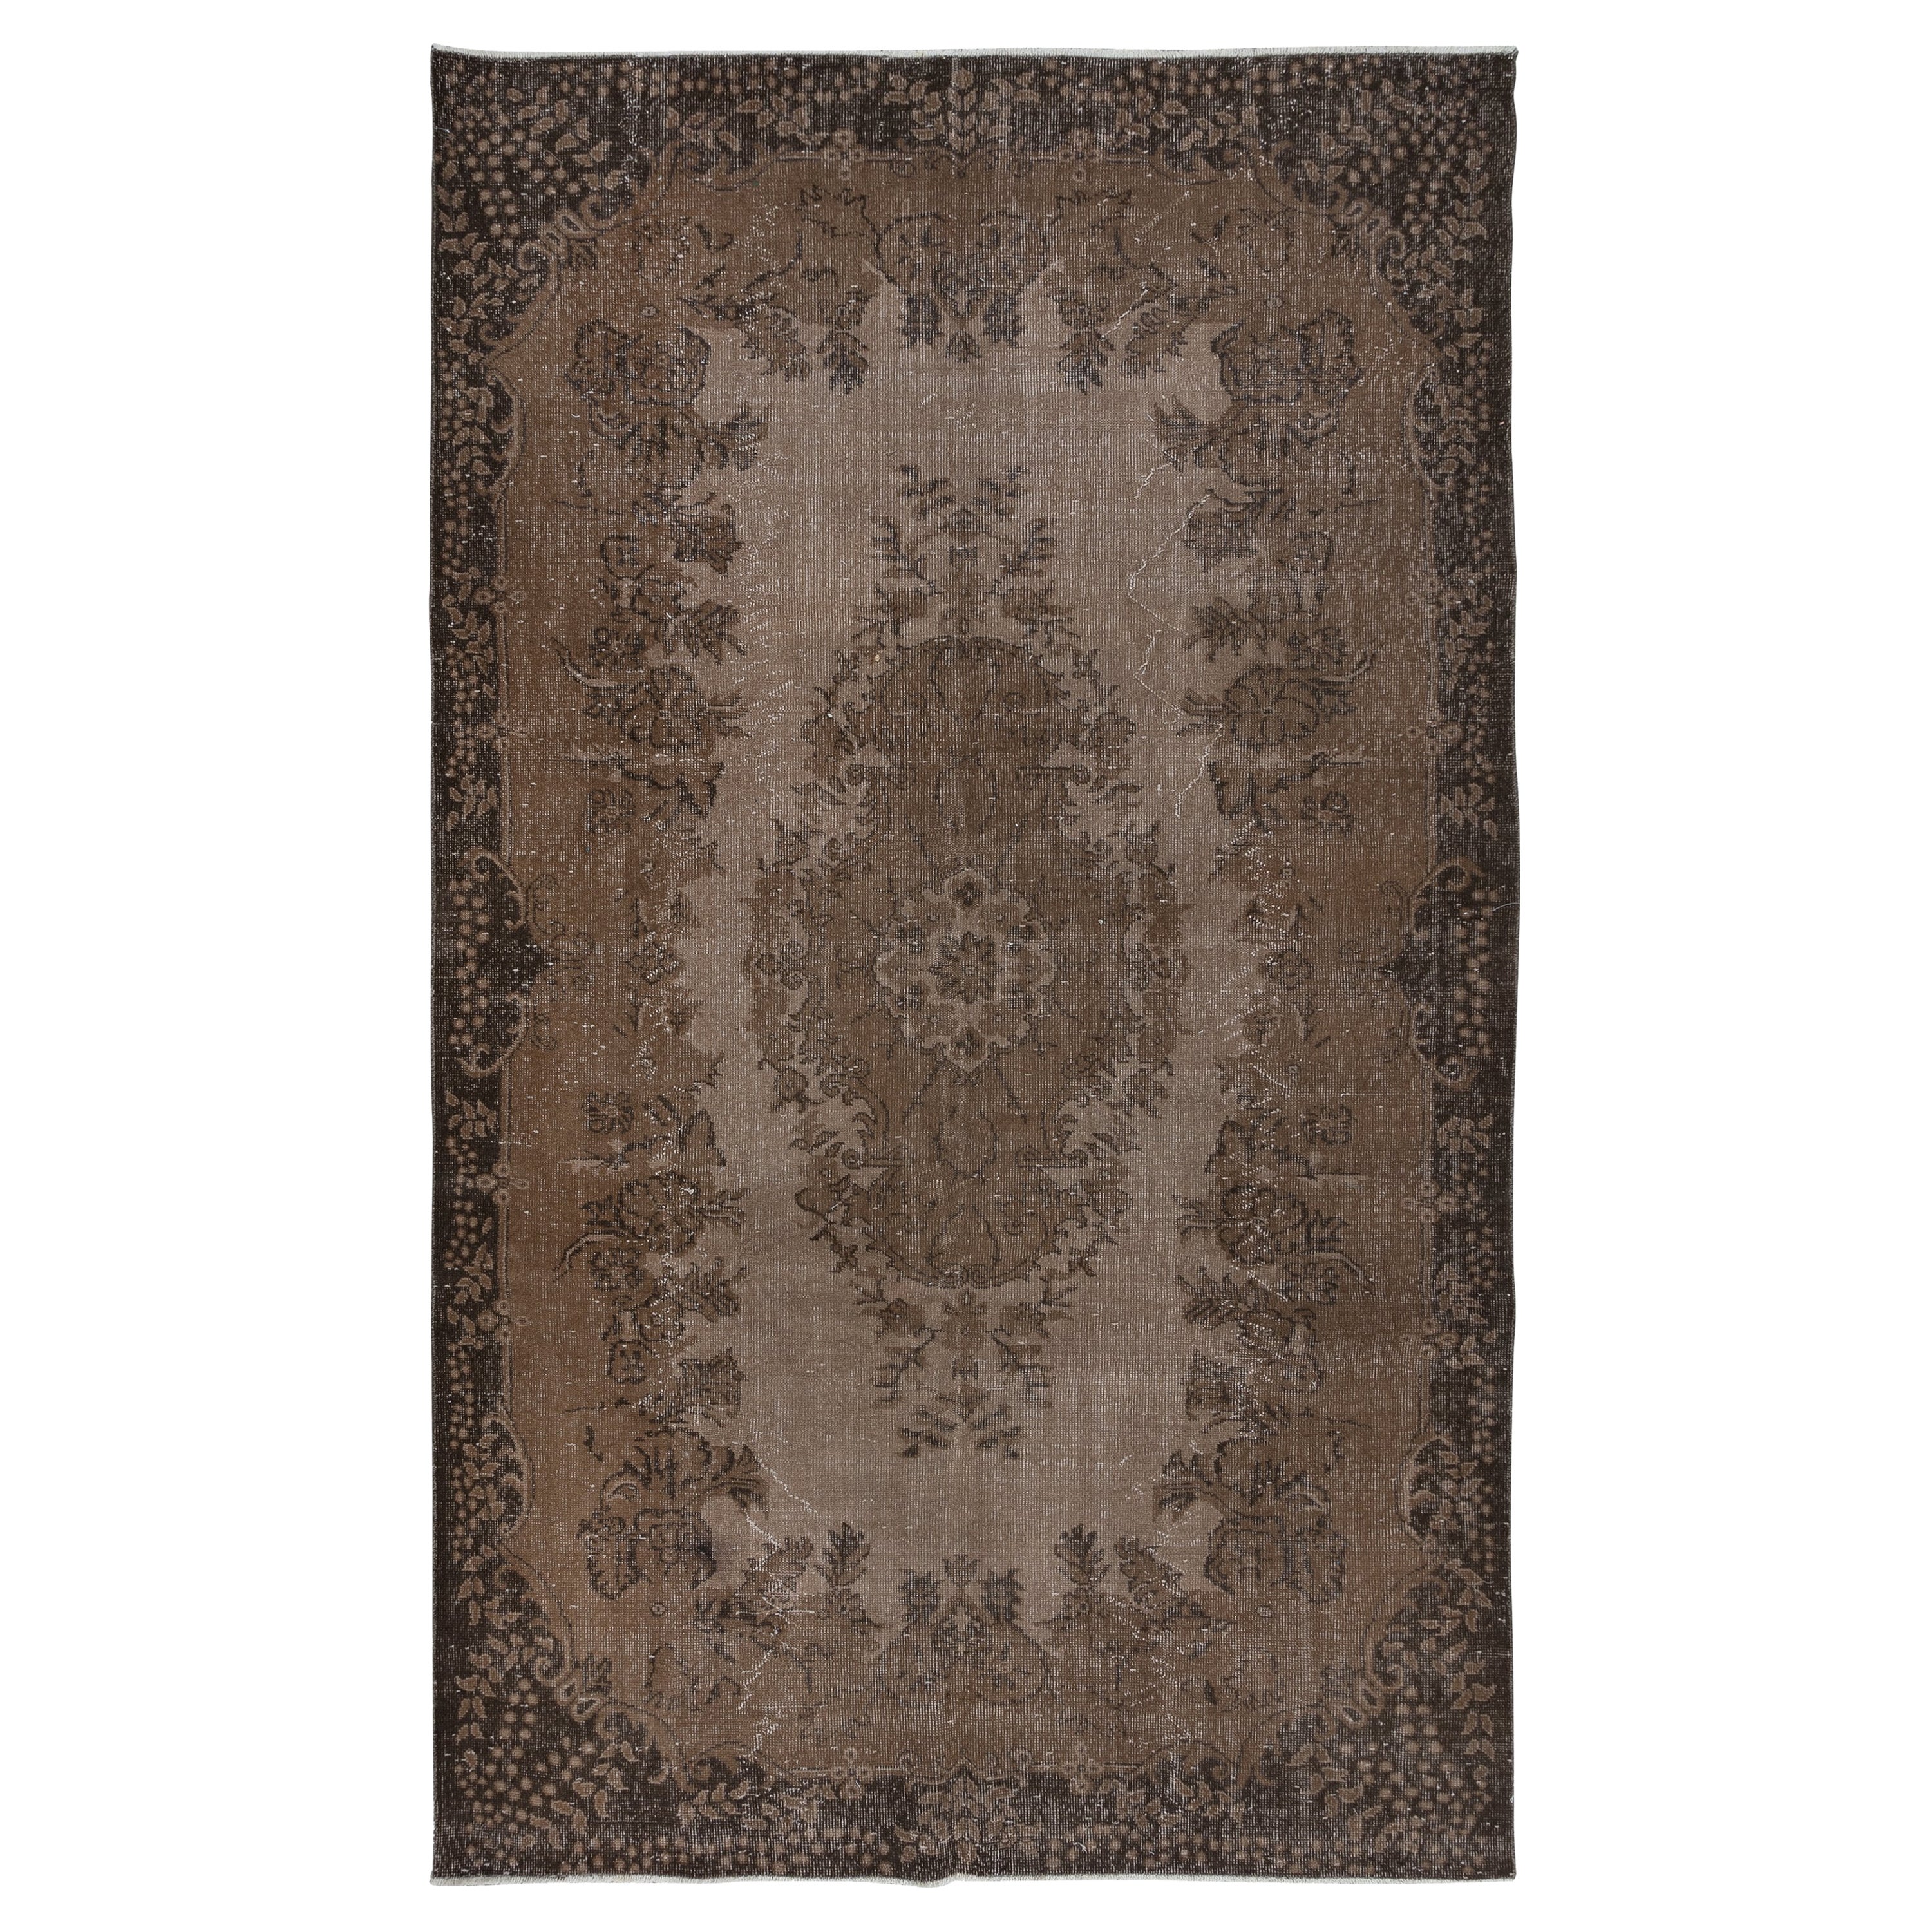 6x9,8 Fuß handgefertigter türkischer Teppich, brauner Medaillon-Design-Teppich für Wohnräume